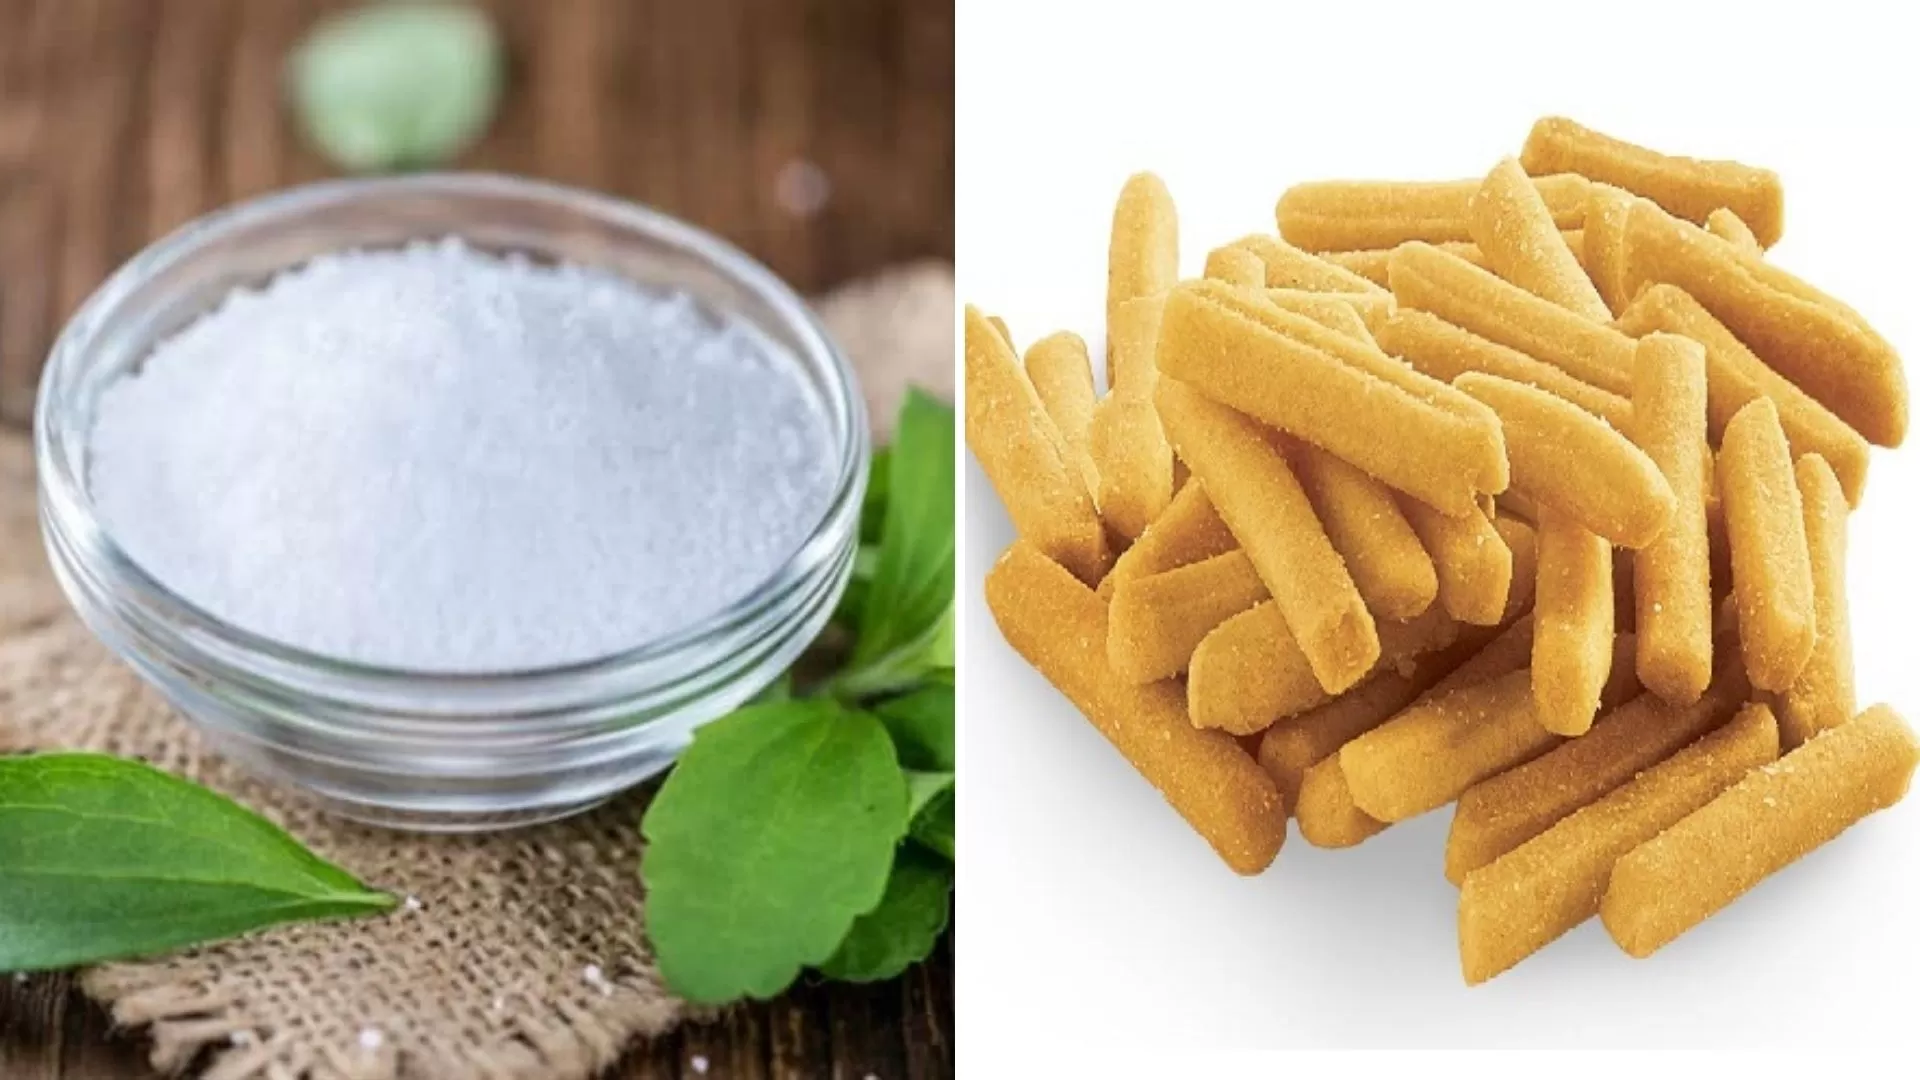 La ANMAT prohibió una marcada de edulcorante stevia y una de palitos salados